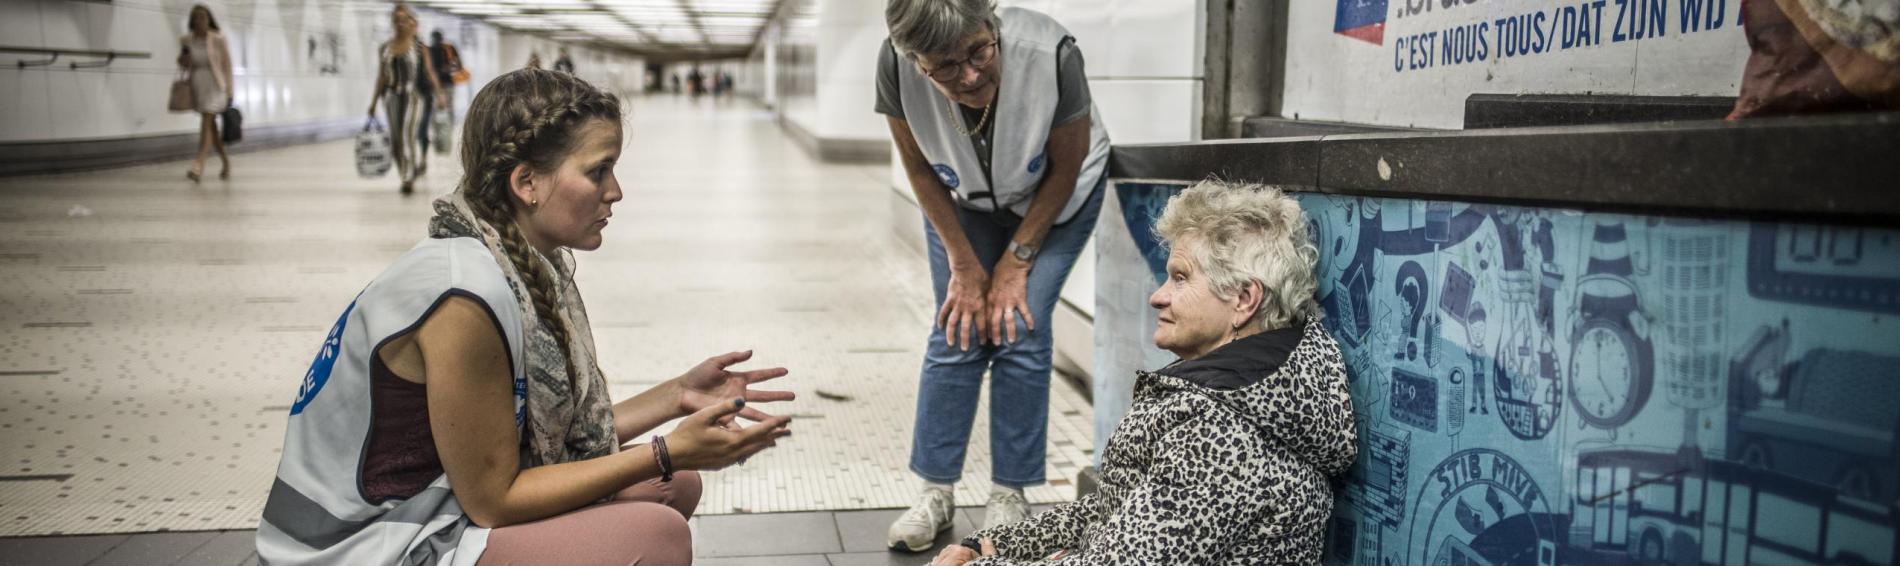 Dans le couloir d'une station de métro, deux travailleuses de Médecins du Monde discute avec une dame agée, assise sur le sol, sur une feuille de journal. Cheveux courts et blancs, elle porte un épais manteau à pois sur une robe rose arrivant à ses genoux, et des chaussures de marche.